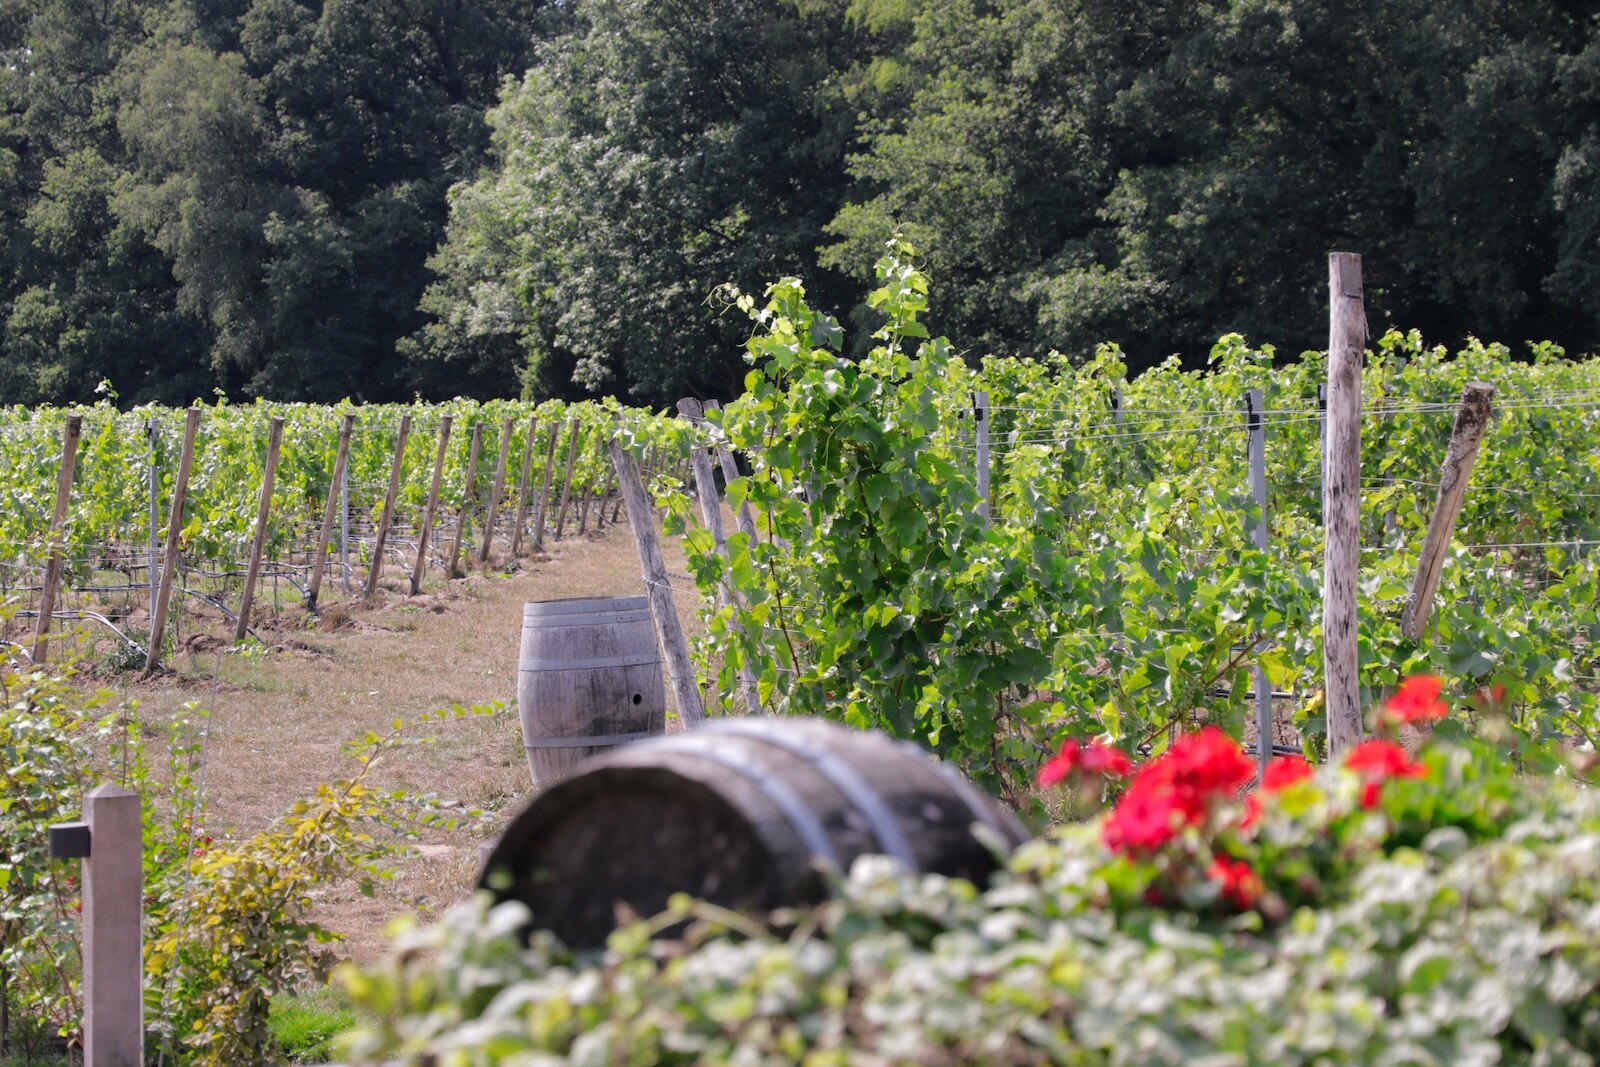 Vineyards of winery Hof van Twente.